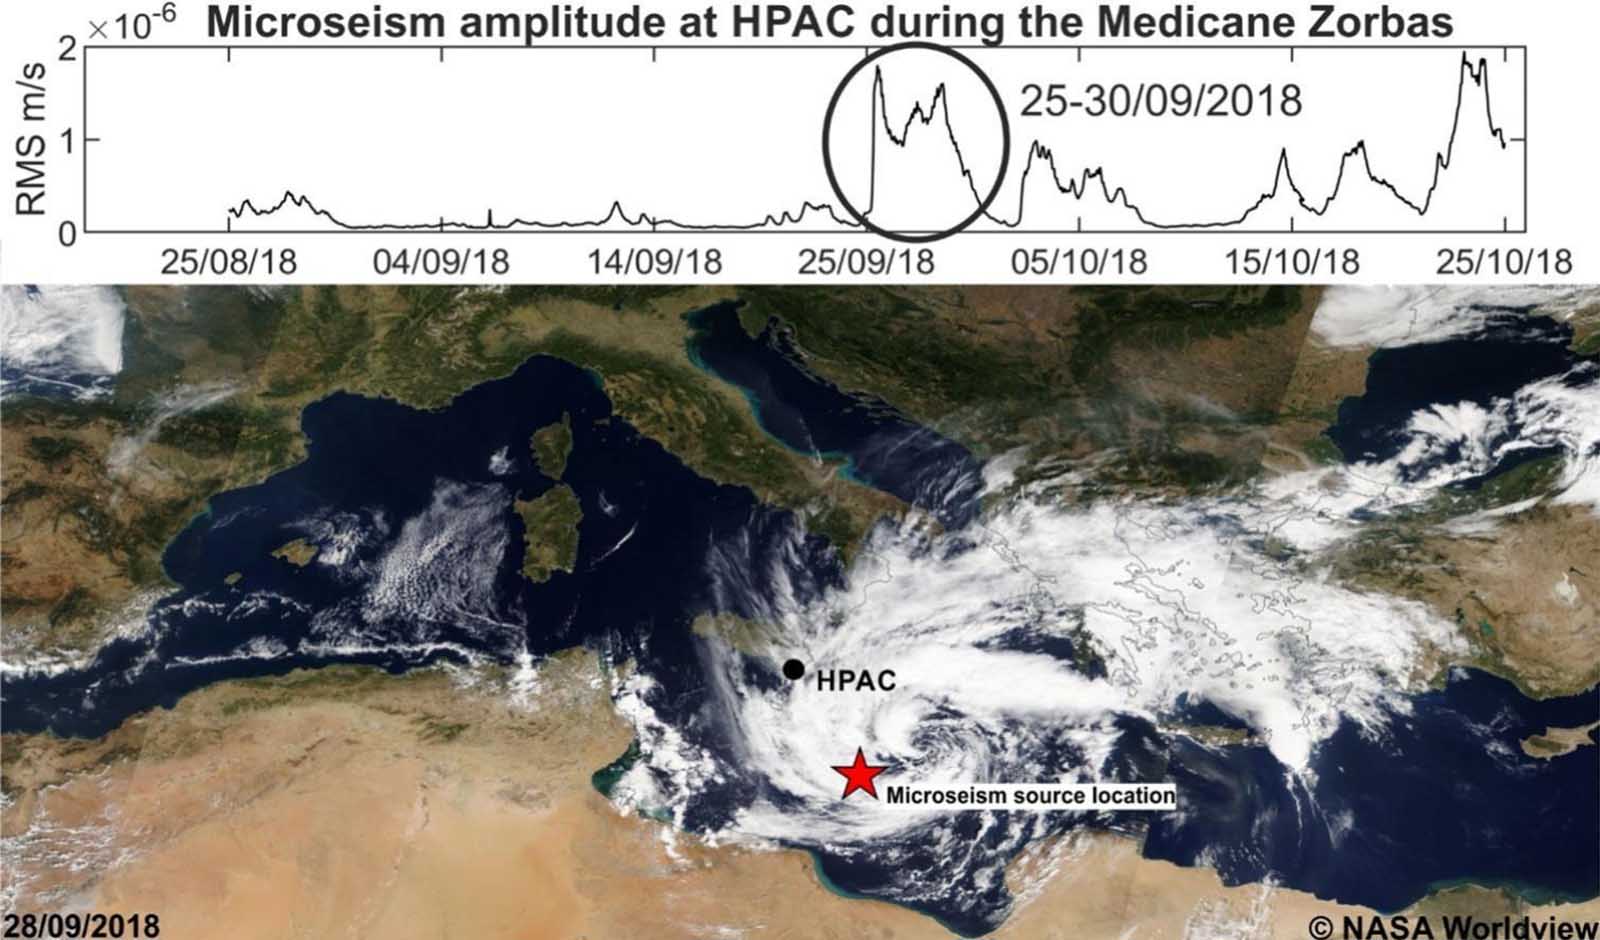 Immagini satellitari dei Medicanes che hanno interessato il Mar Mediterraneo dal 2011 al 2023 (©NasaWorldview). La stella rossa mostra la posizione della sorgente del microseism ricavata dalle analisi condotte. 